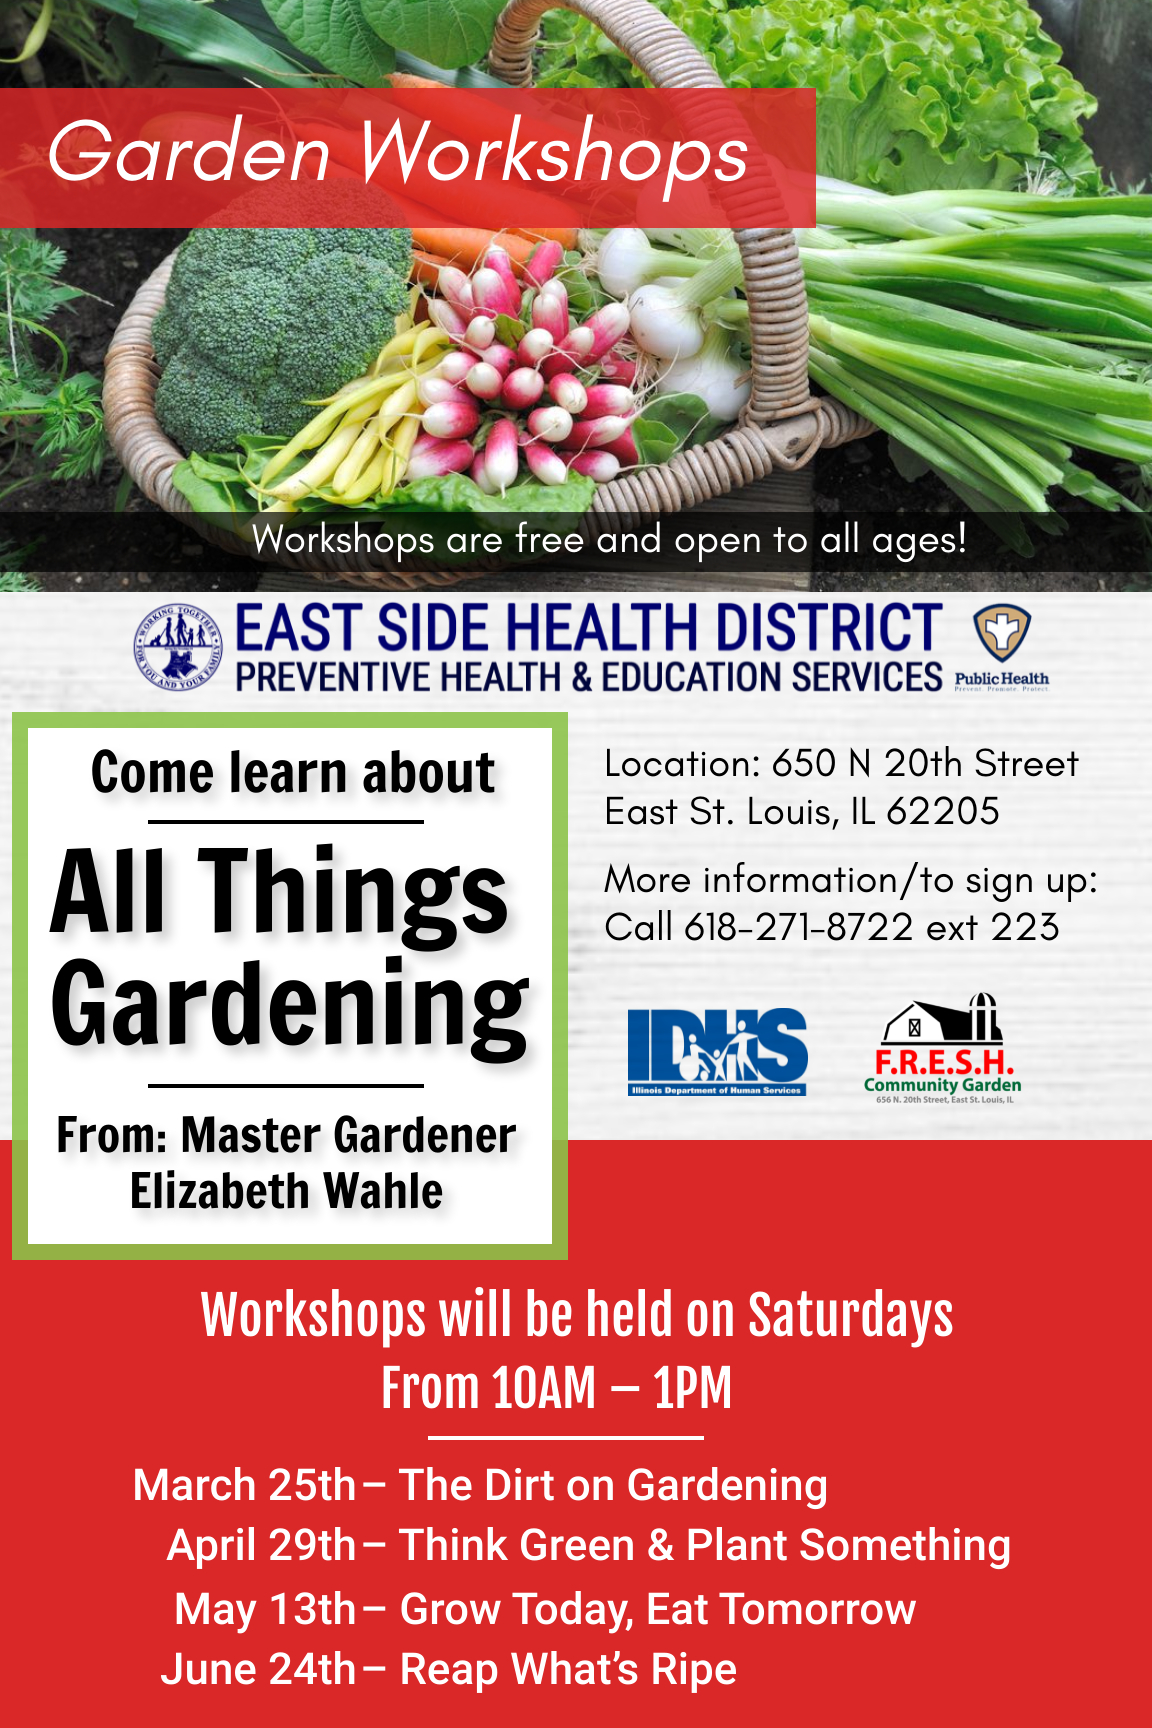 East Side Health District's Garden Workshops